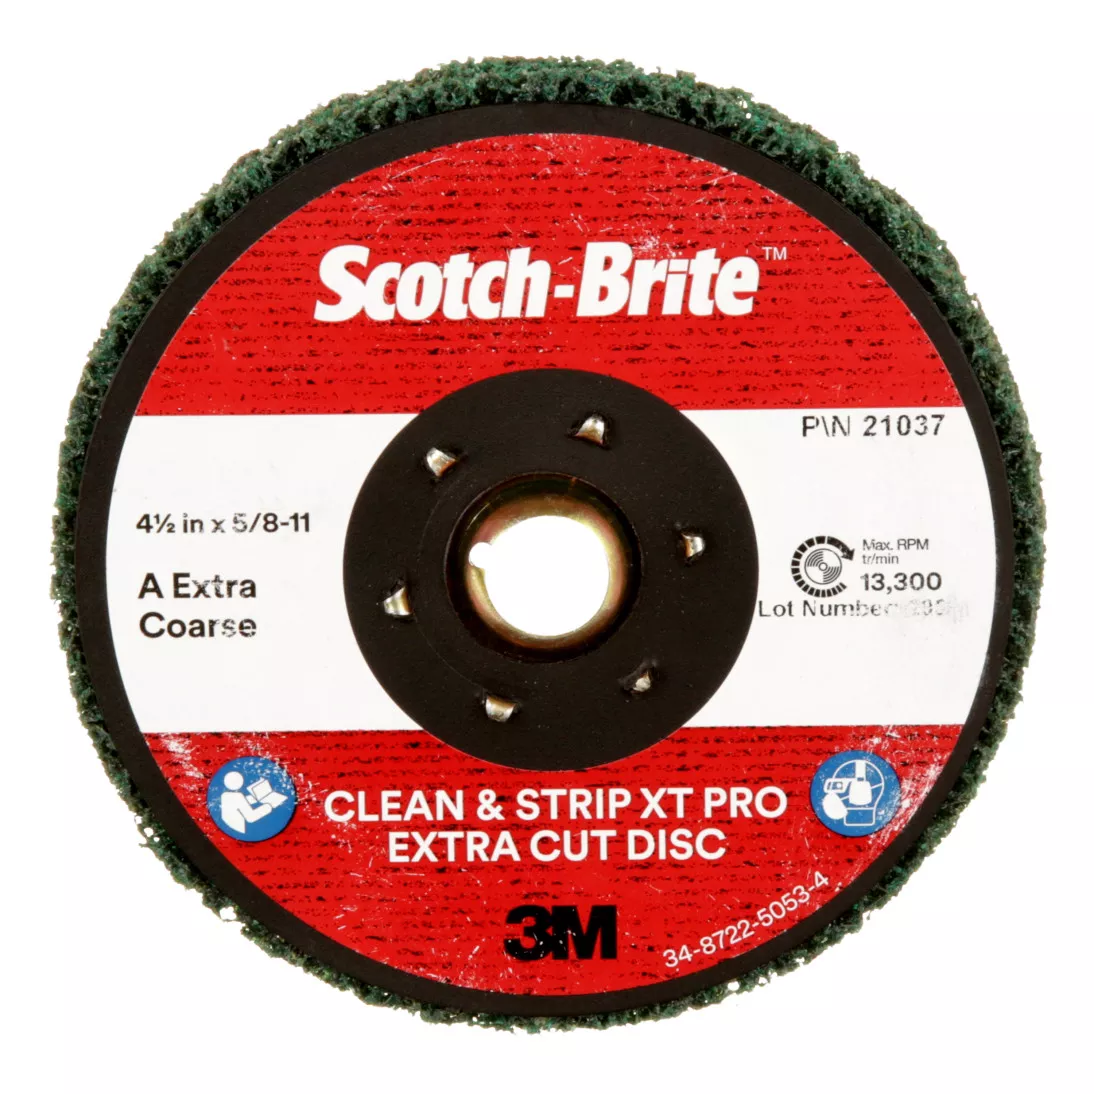 Scotch-Brite™ Clean and Strip XT Pro Extra Cut Disc, CX-DN, A/O Extra
Coarse, TN, Green, 4-1/2 in x 5/8